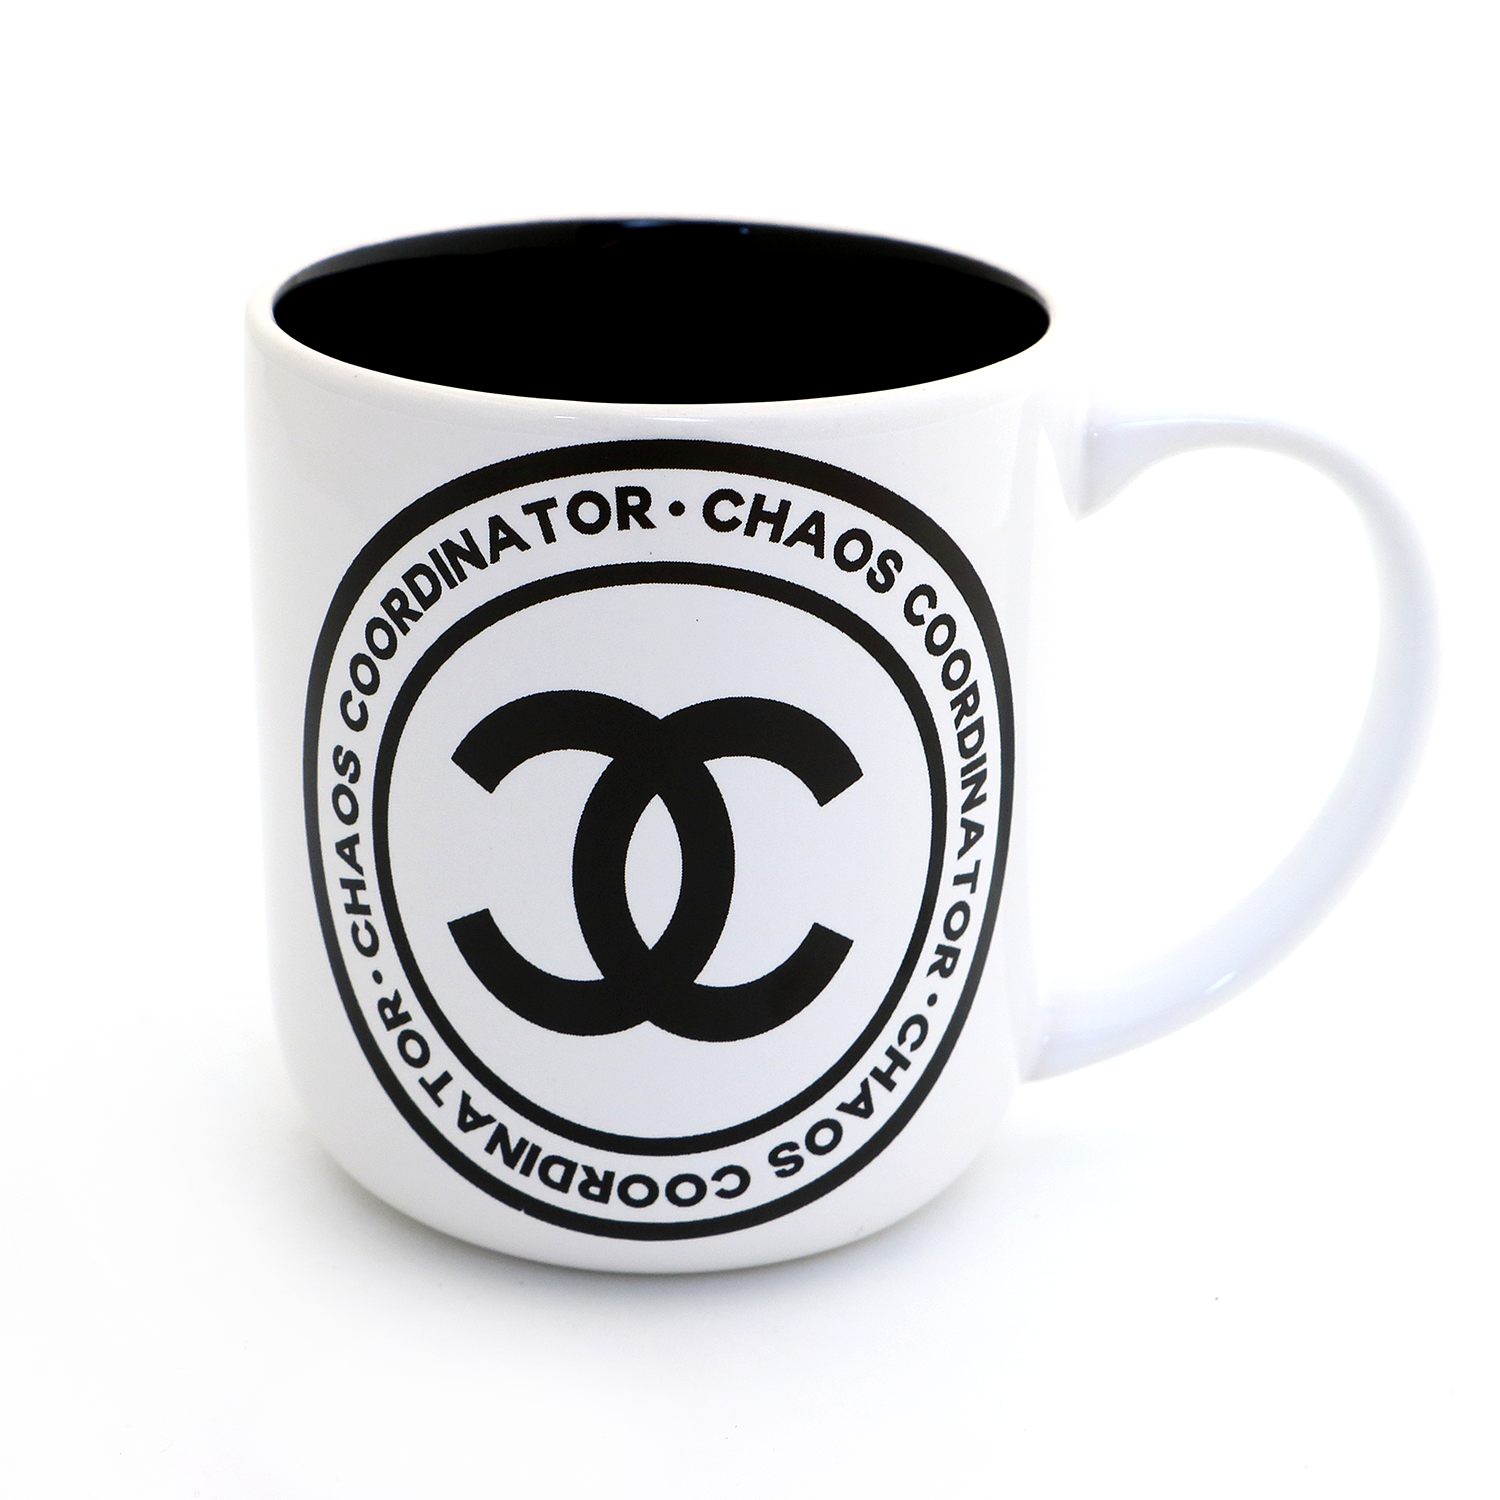 Chaos coordinator mug, Mom mug, Gift for Mom – LennyMud